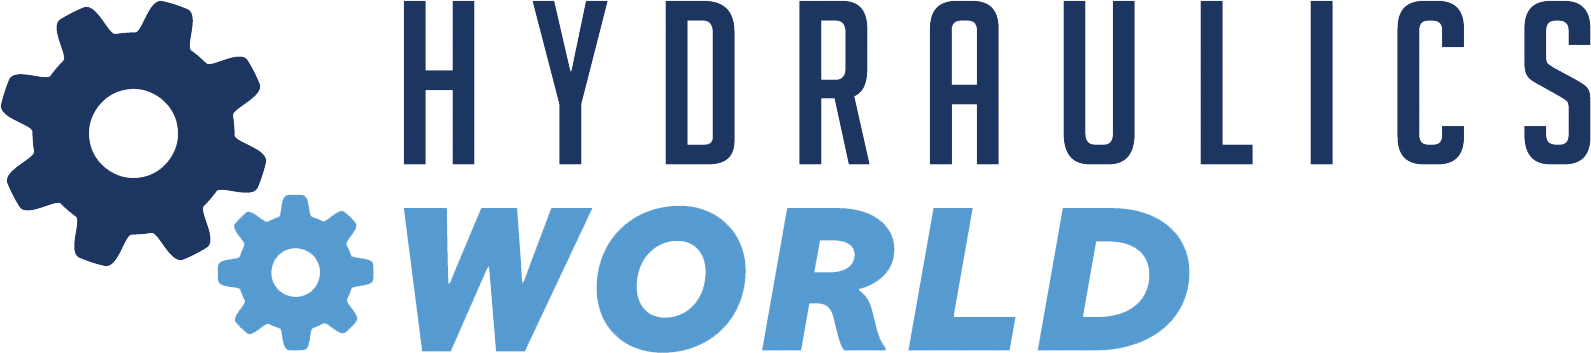 Hydraulics World - Logo